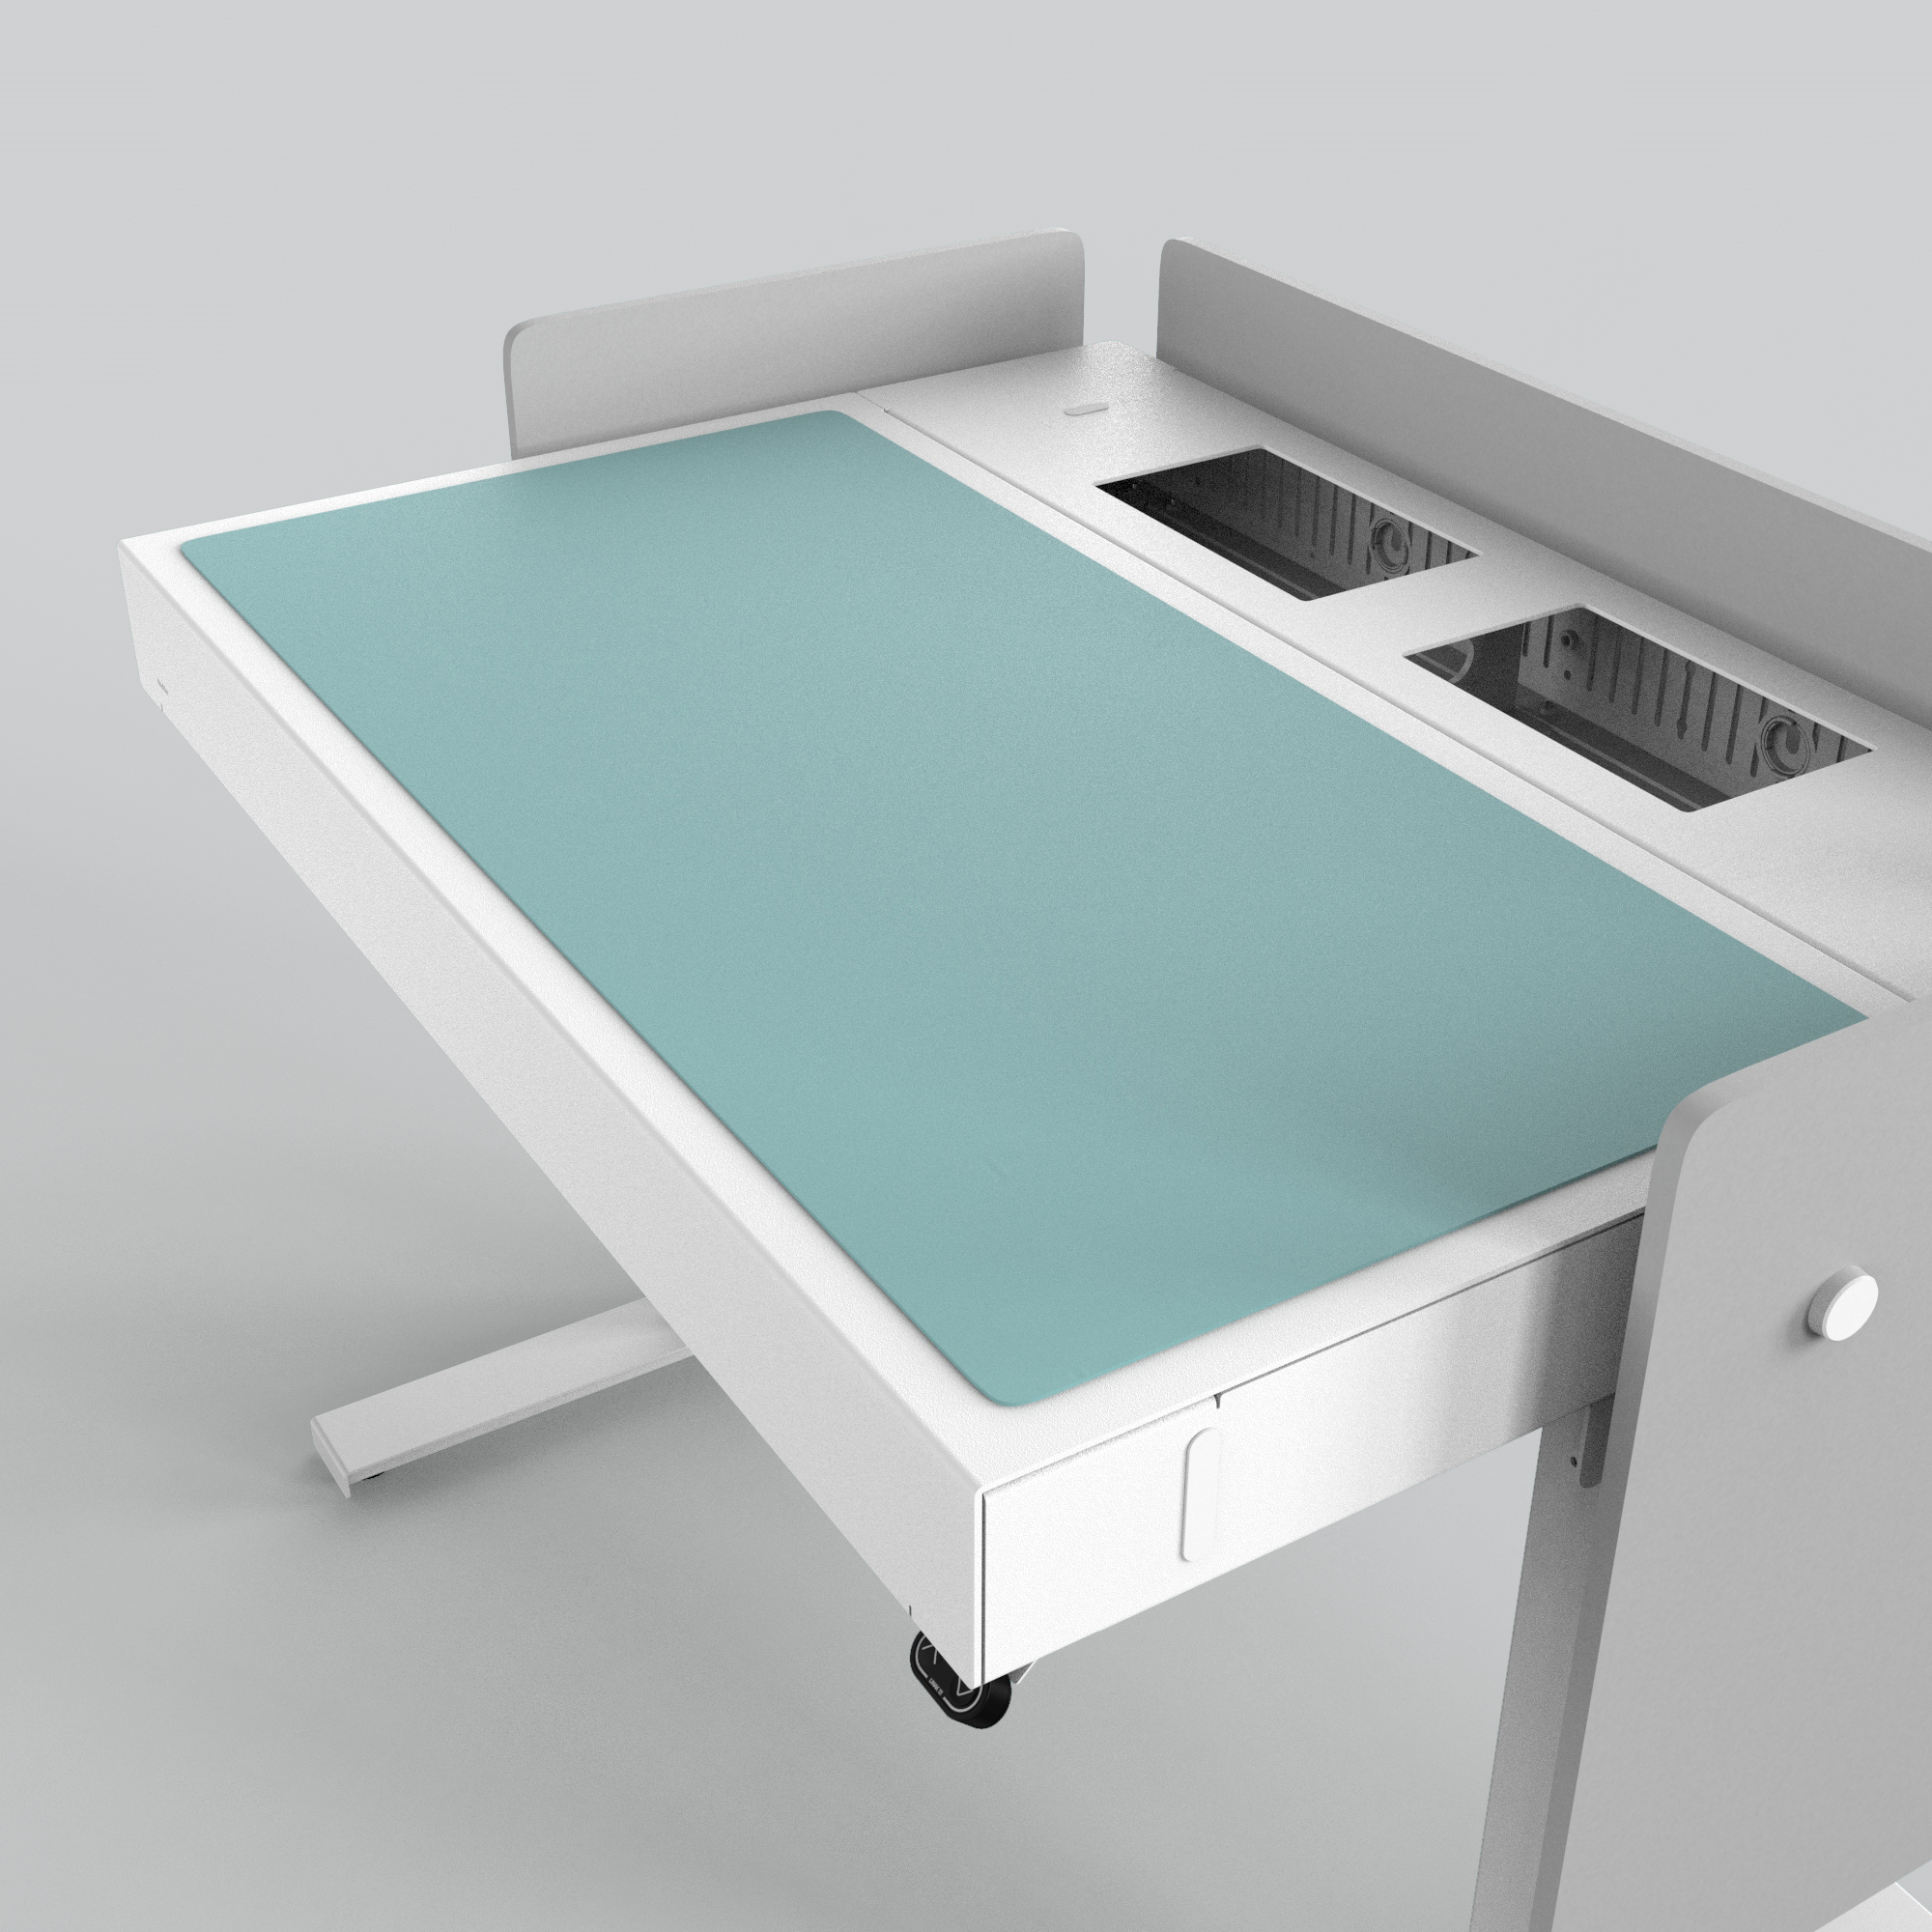 H922-4180 4U Deskpad - Aquavert